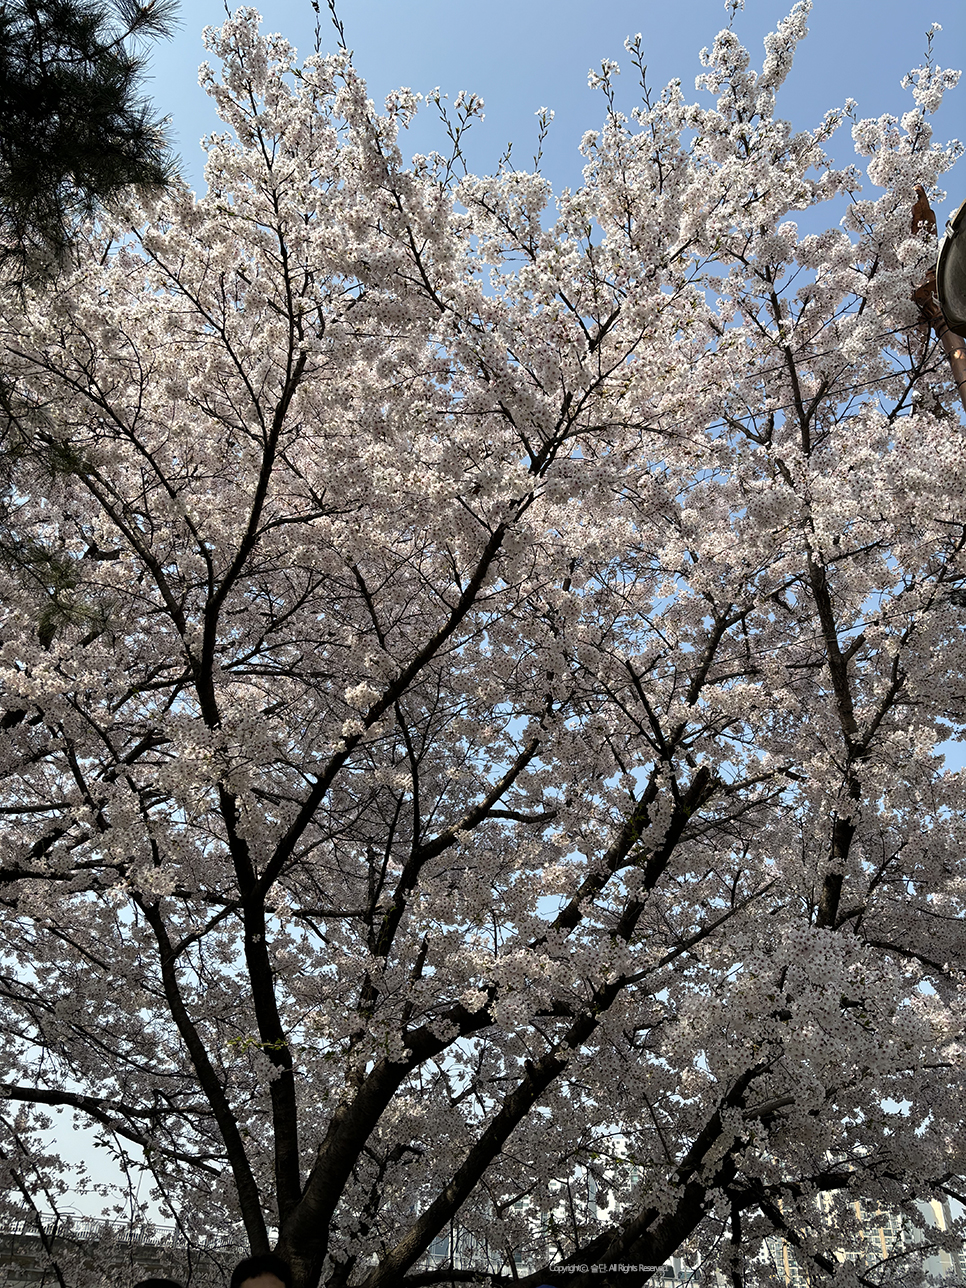 아이폰 벚꽃보정 하는법 기본카메라로 쉽게 하기 +인물사진